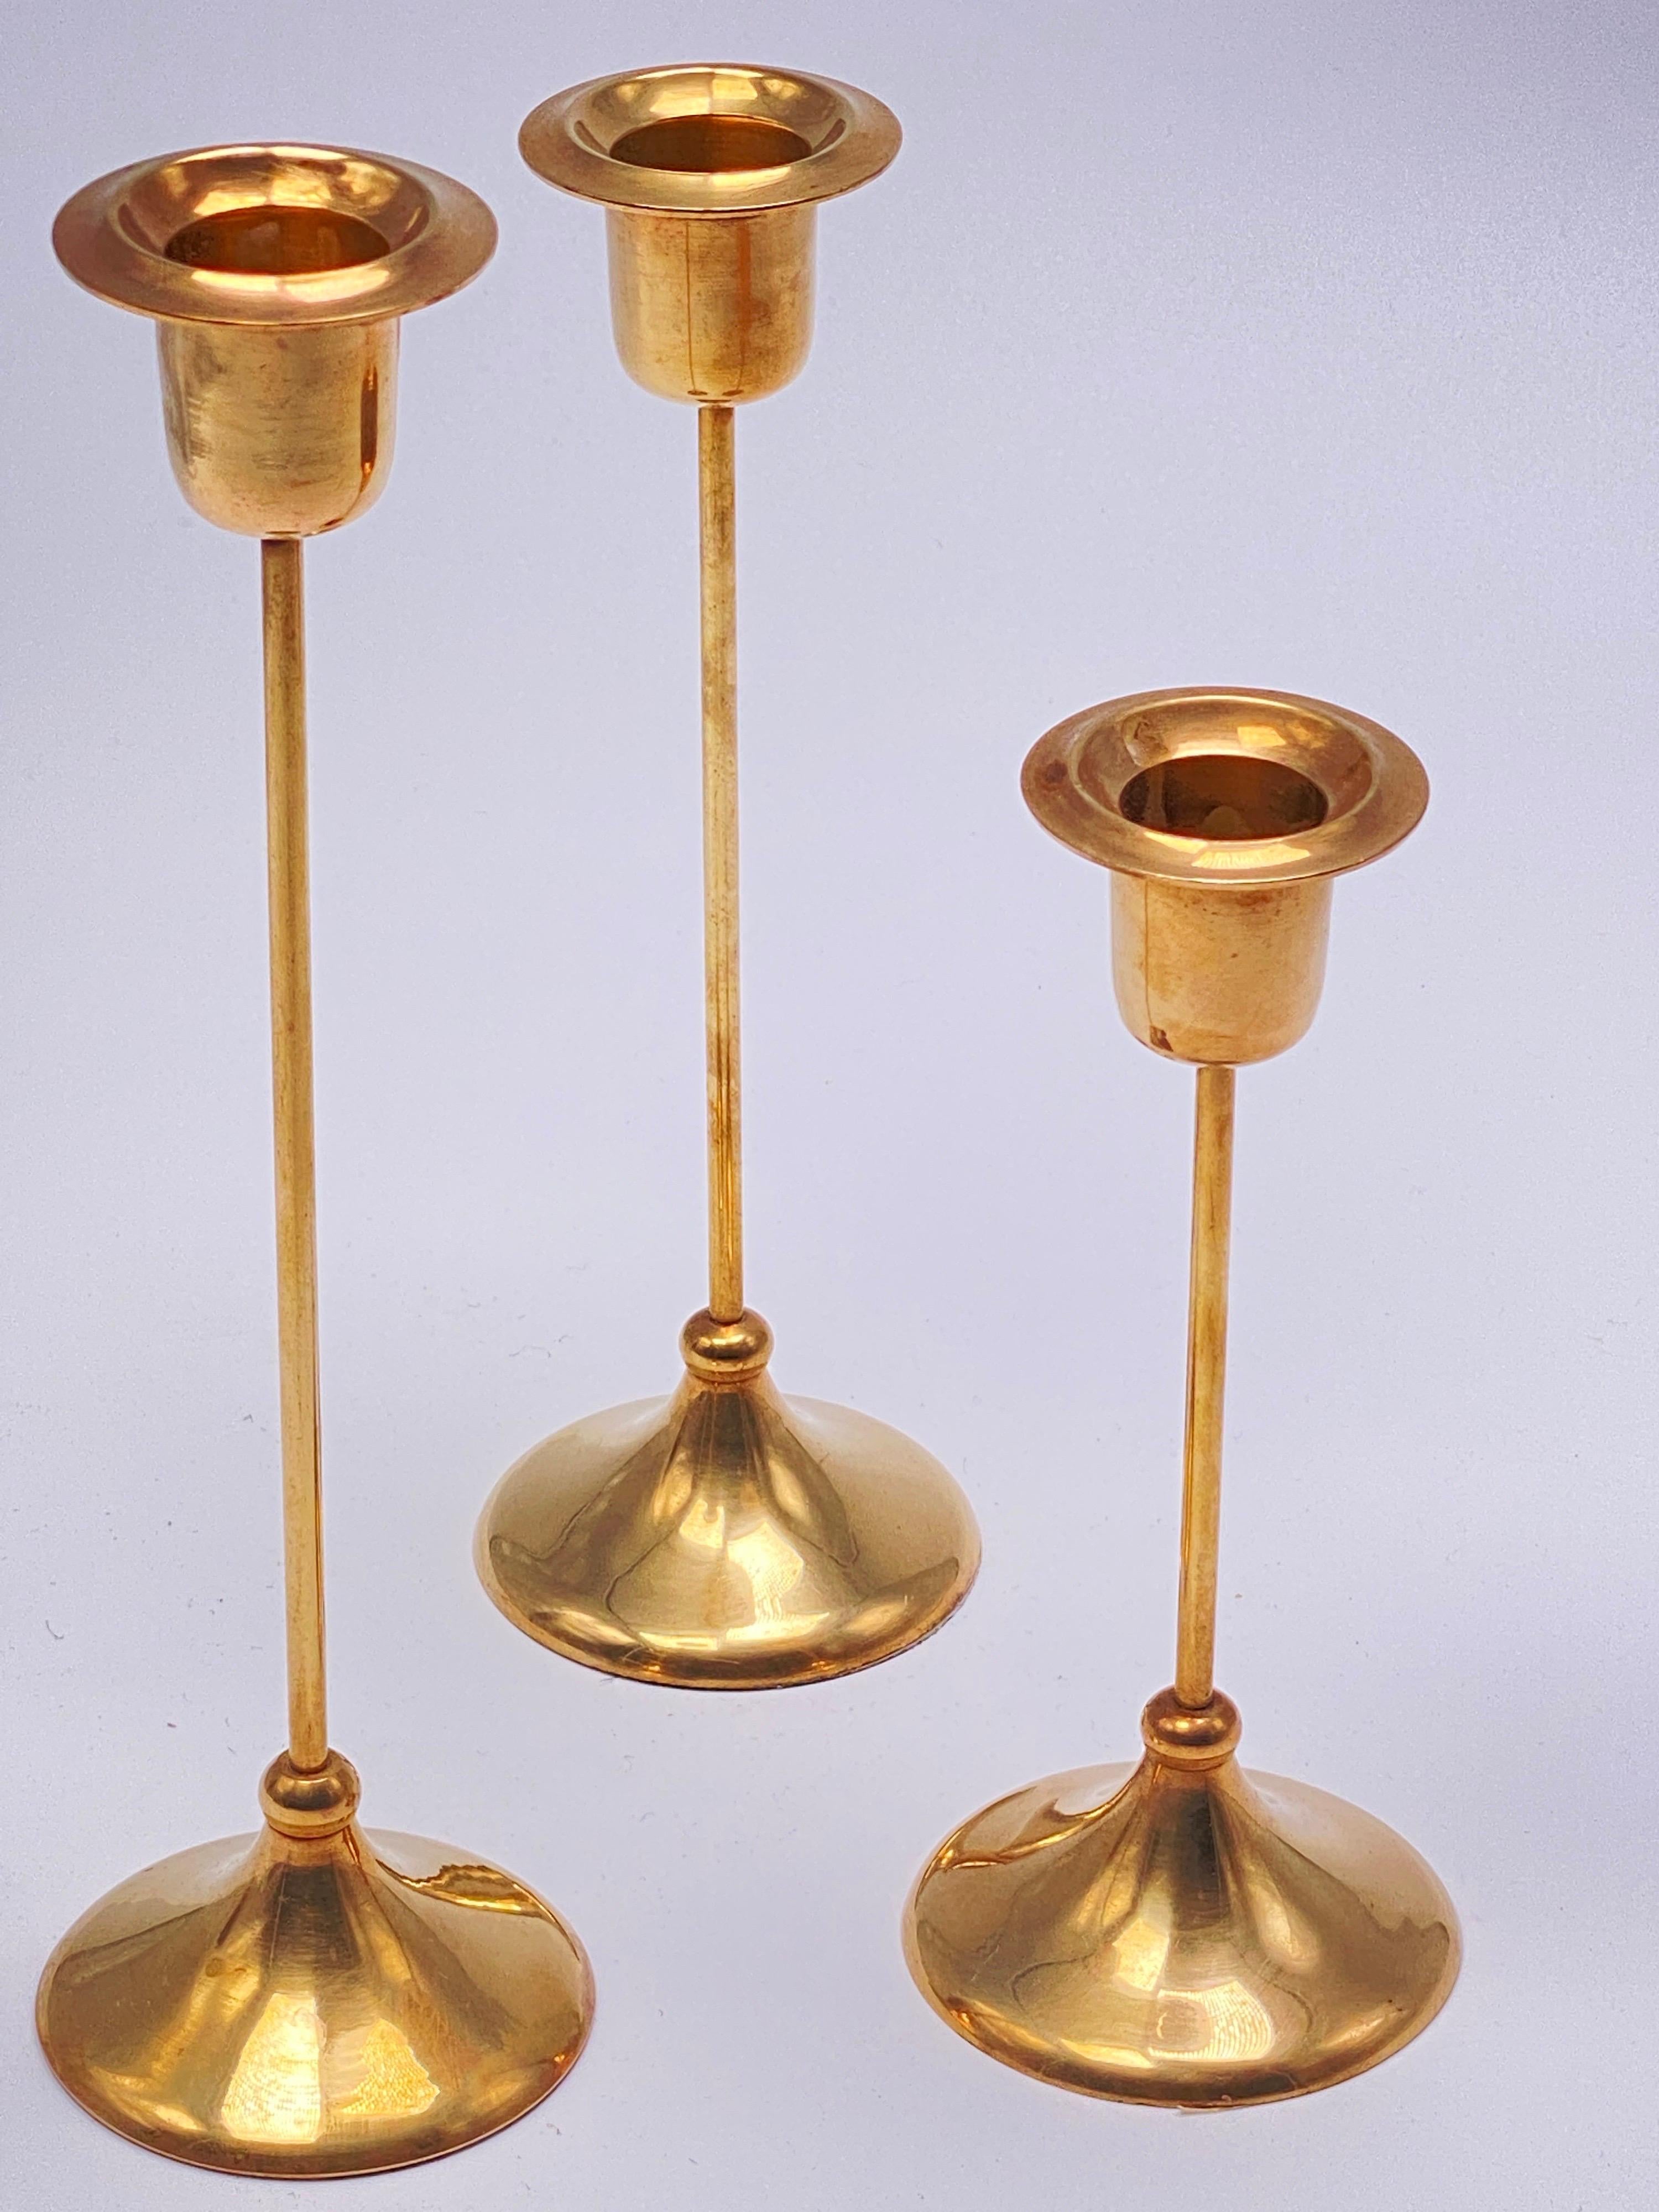 das Set besteht aus drei Kerzenhaltern aus Messing. Es wurde um 1960 in Schweden hergestellt.
Die Farbe ist Gold.